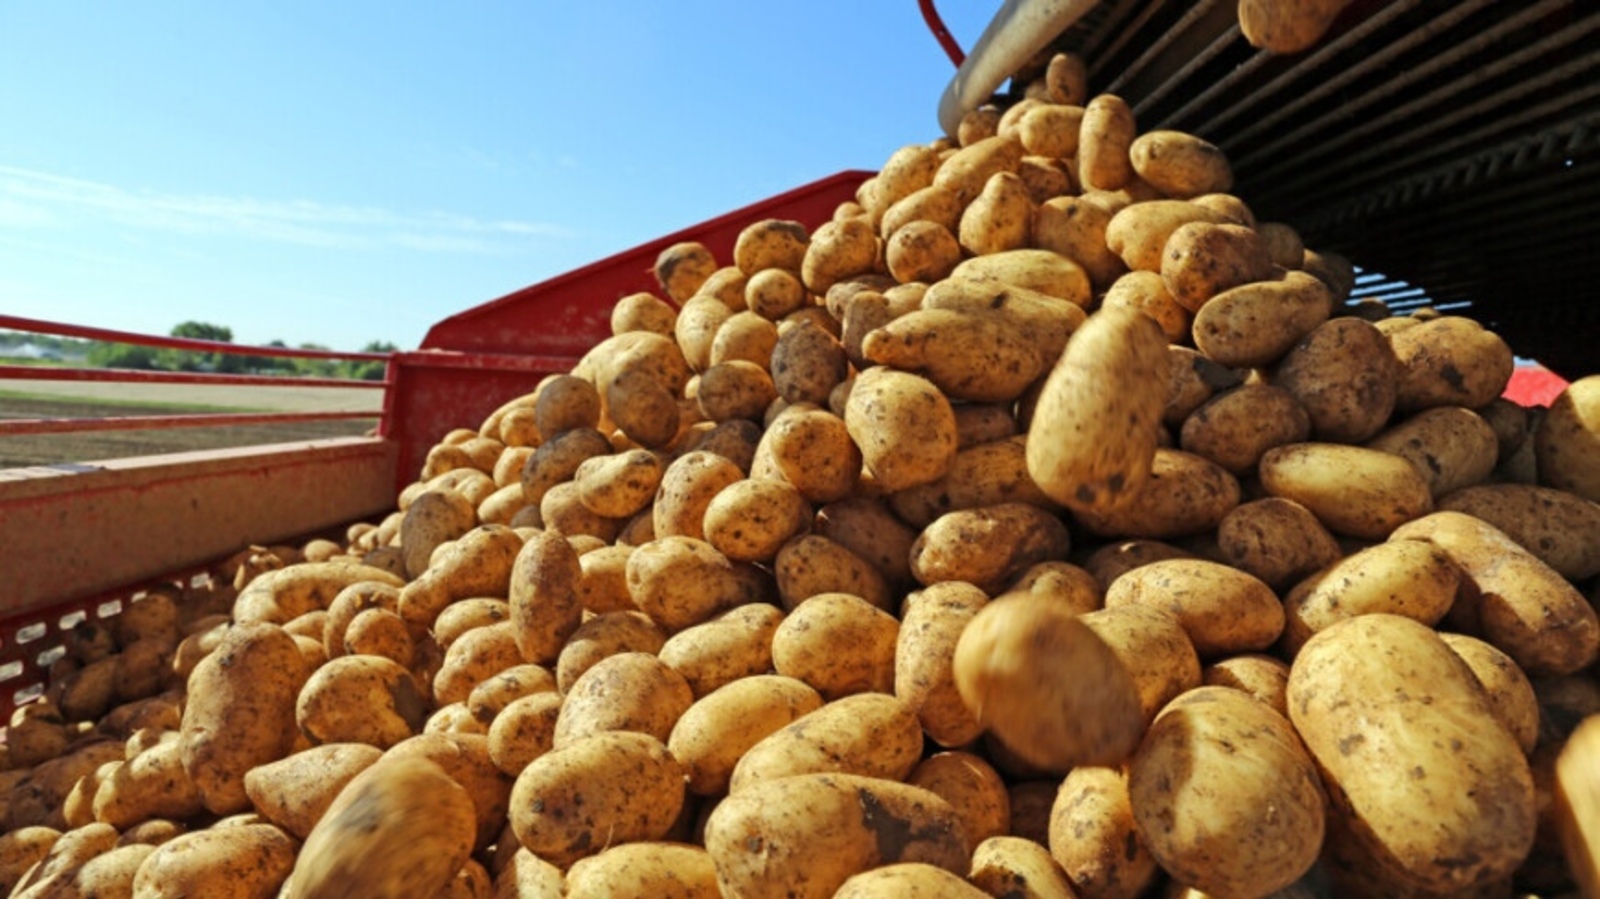 Картофельный союз предложил поднять импортные пошлины на картофель